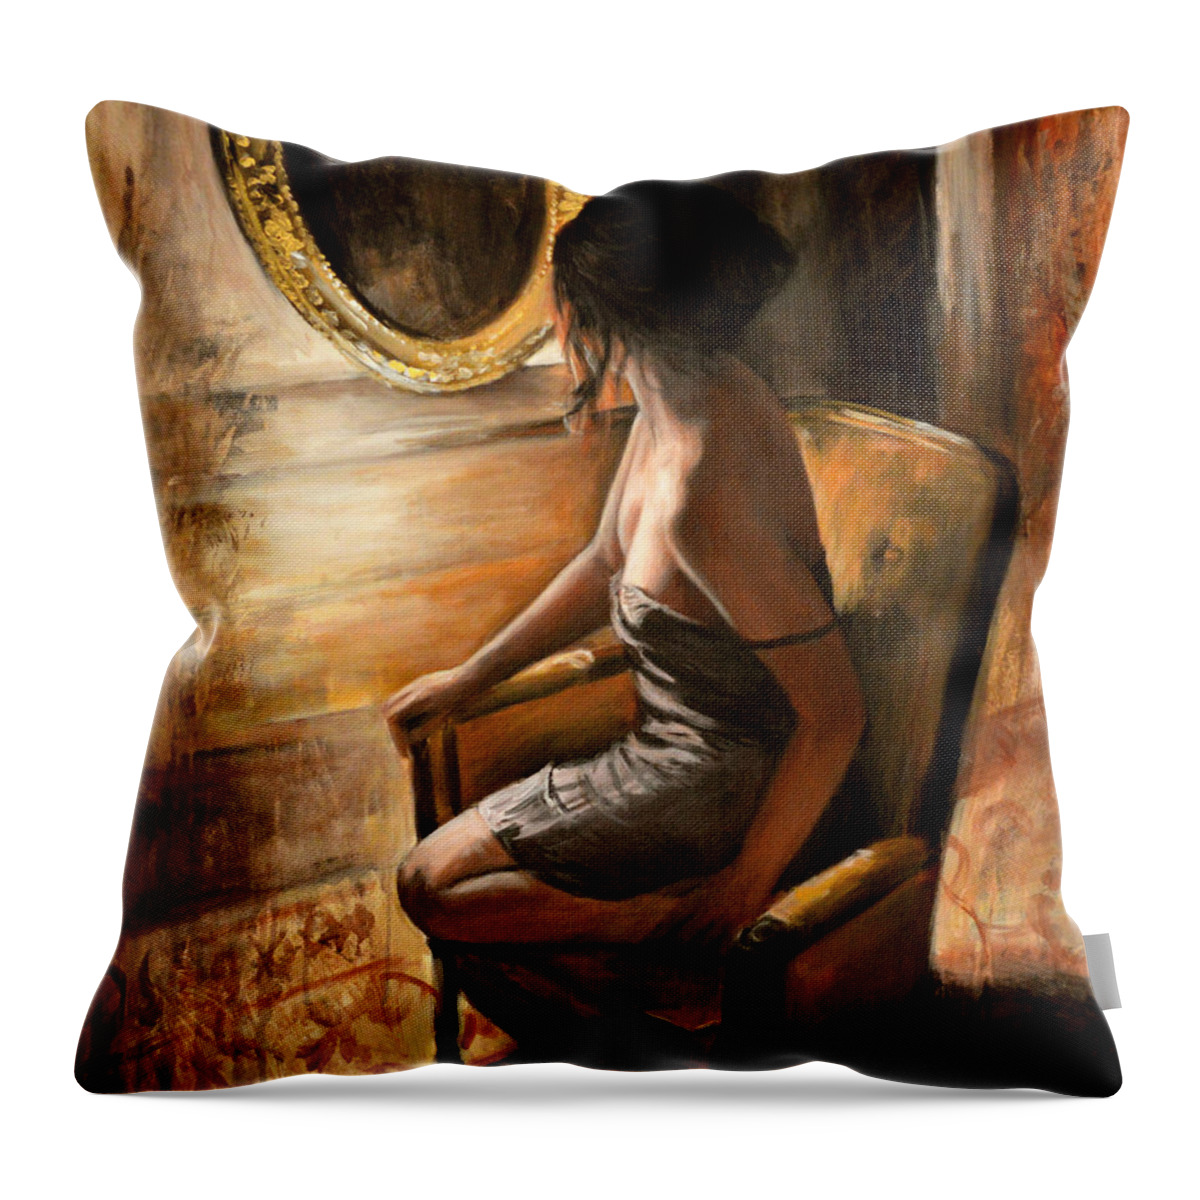 Woman Throw Pillow featuring the painting Sara by Escha Van den bogerd